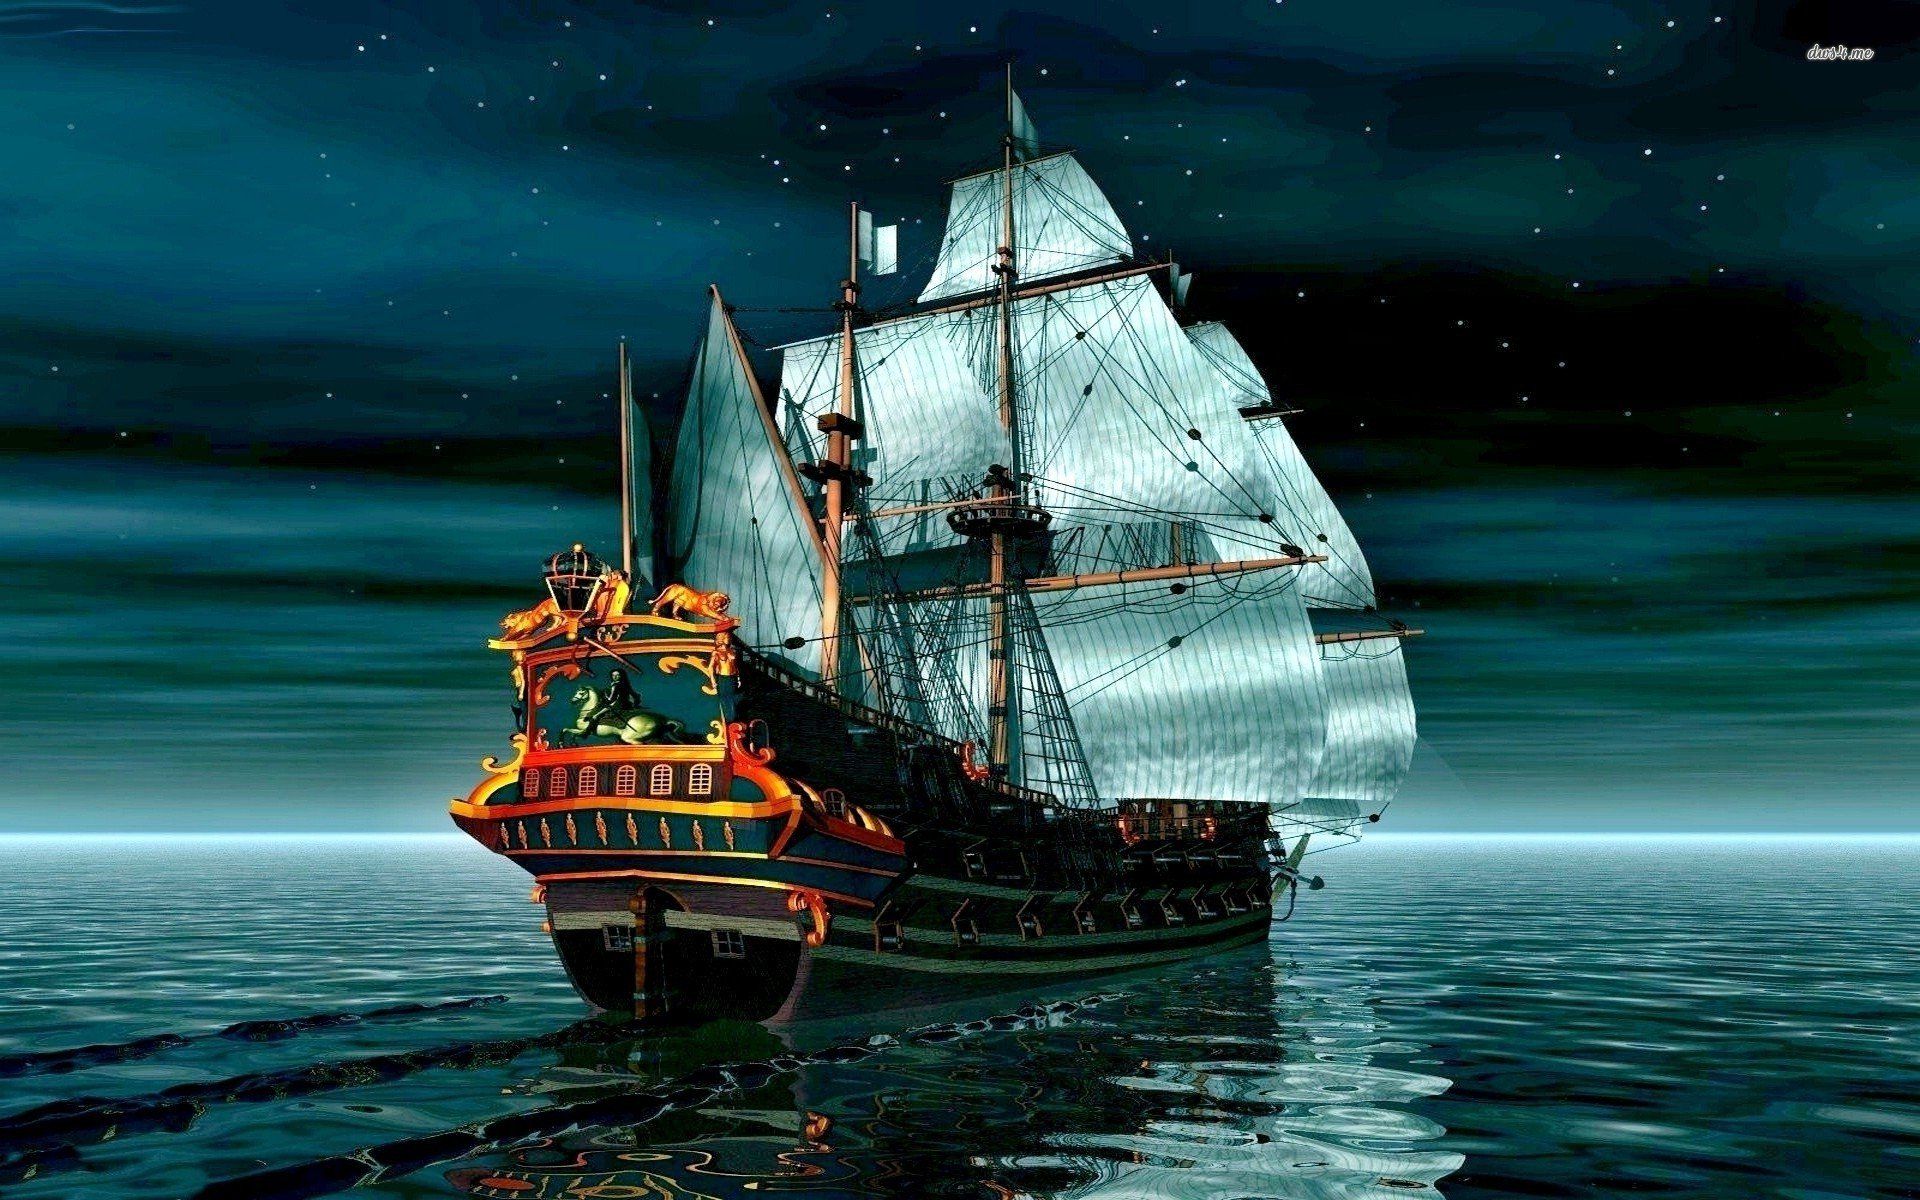 Pirate ship sailing in the night - Pirate